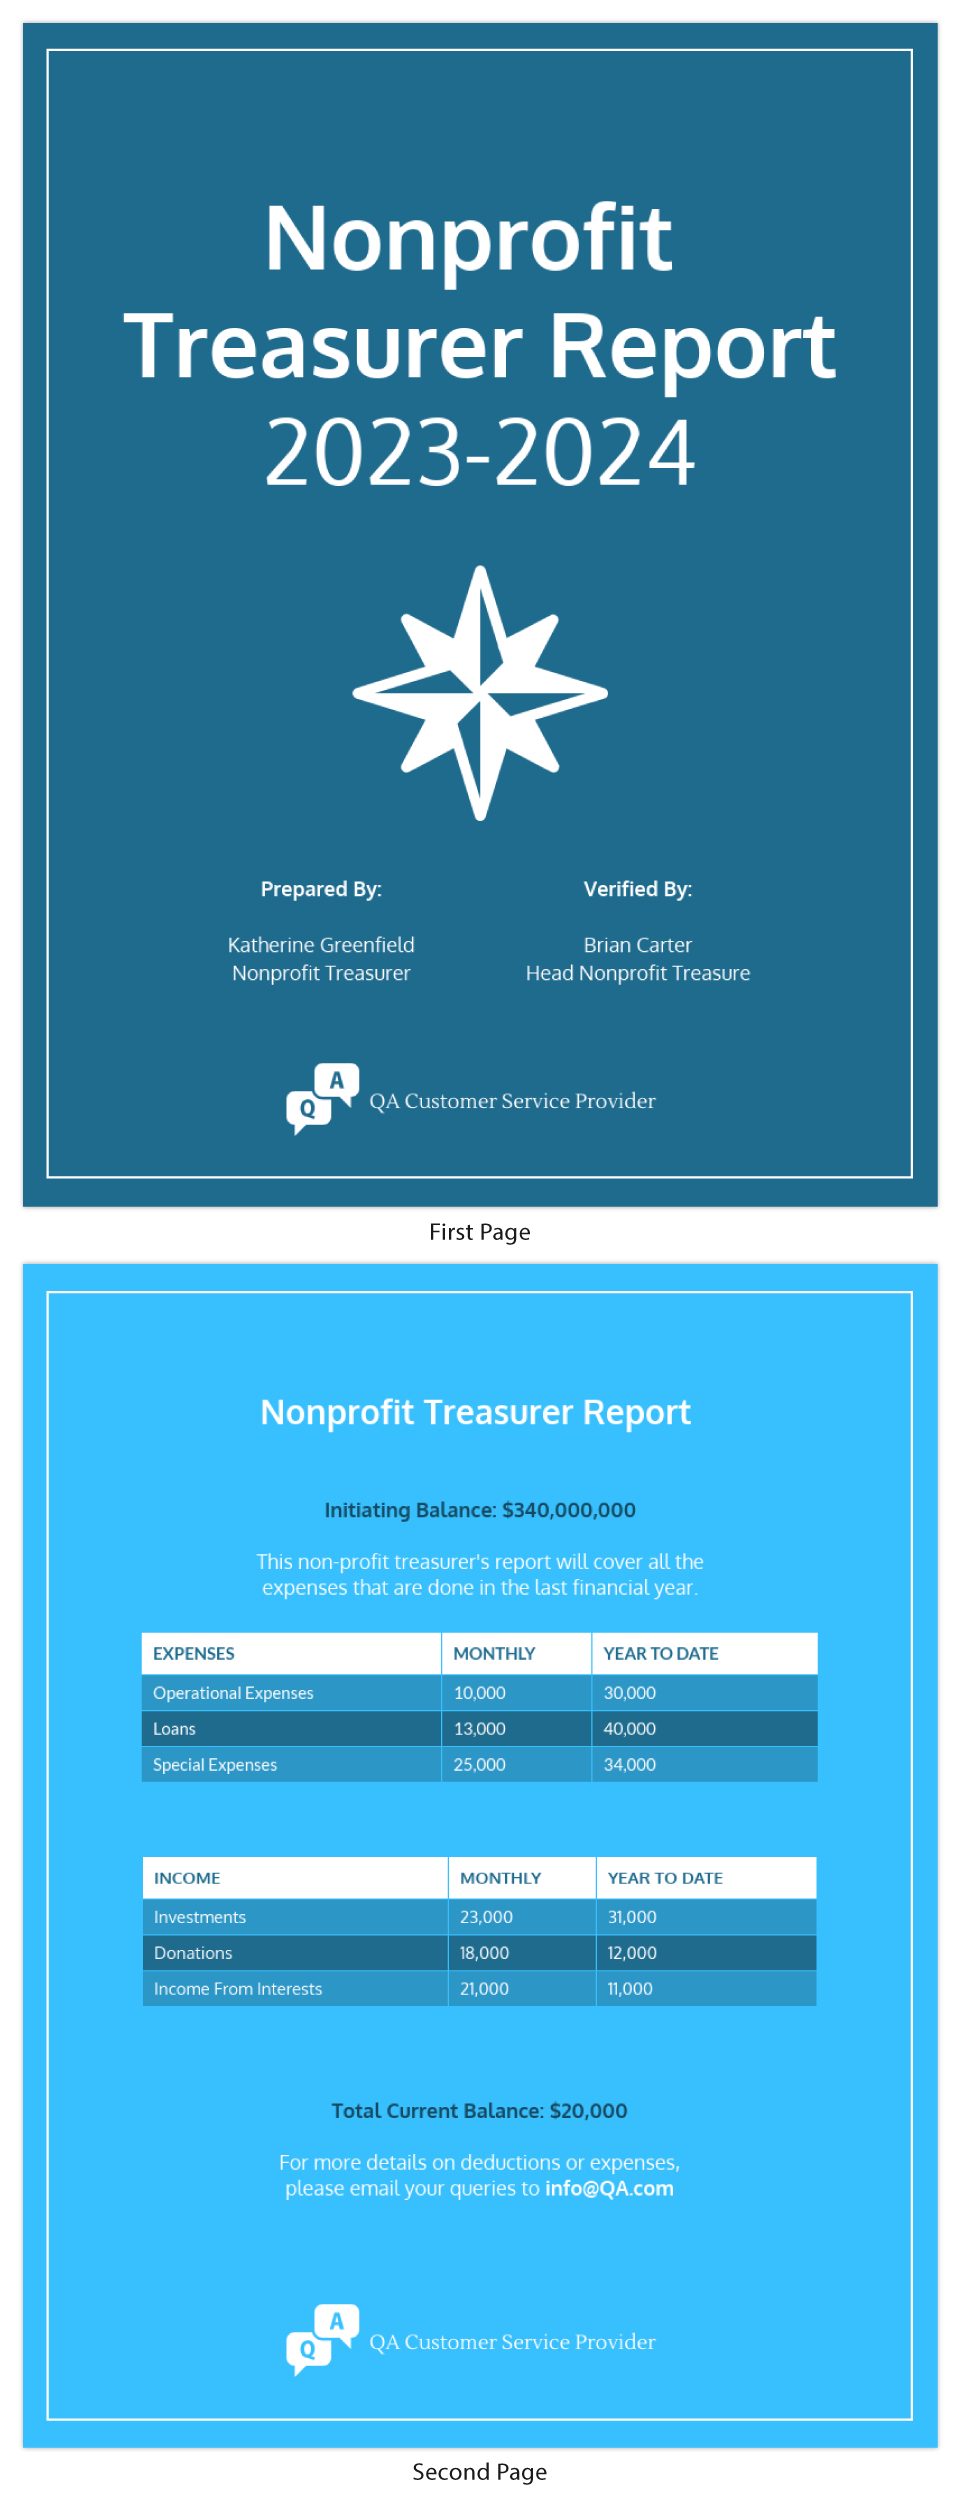 Nonprofit Treasurer Report Template With Non Profit Treasurer Report Template